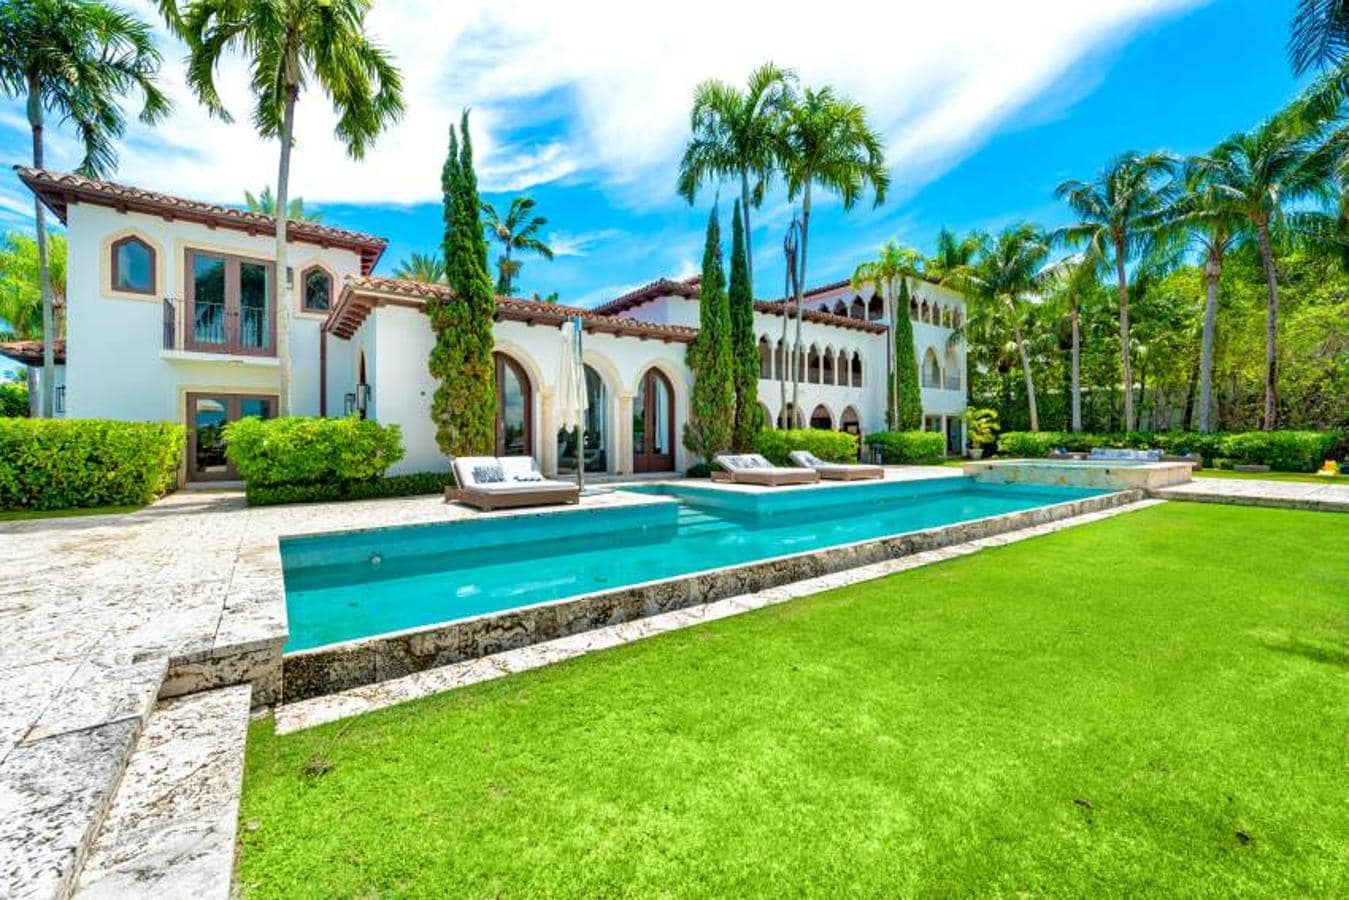 La espectacular mansión de Cher en Miami. La casa posee un embarcadero propio que comunica con el jardín principal, donde una exuberante vegetación con grandes palmeras incluidas se hace con todo el protagonismo. No falta tampoco una piscina rectangular y todo tipo de rincones para relajarse.